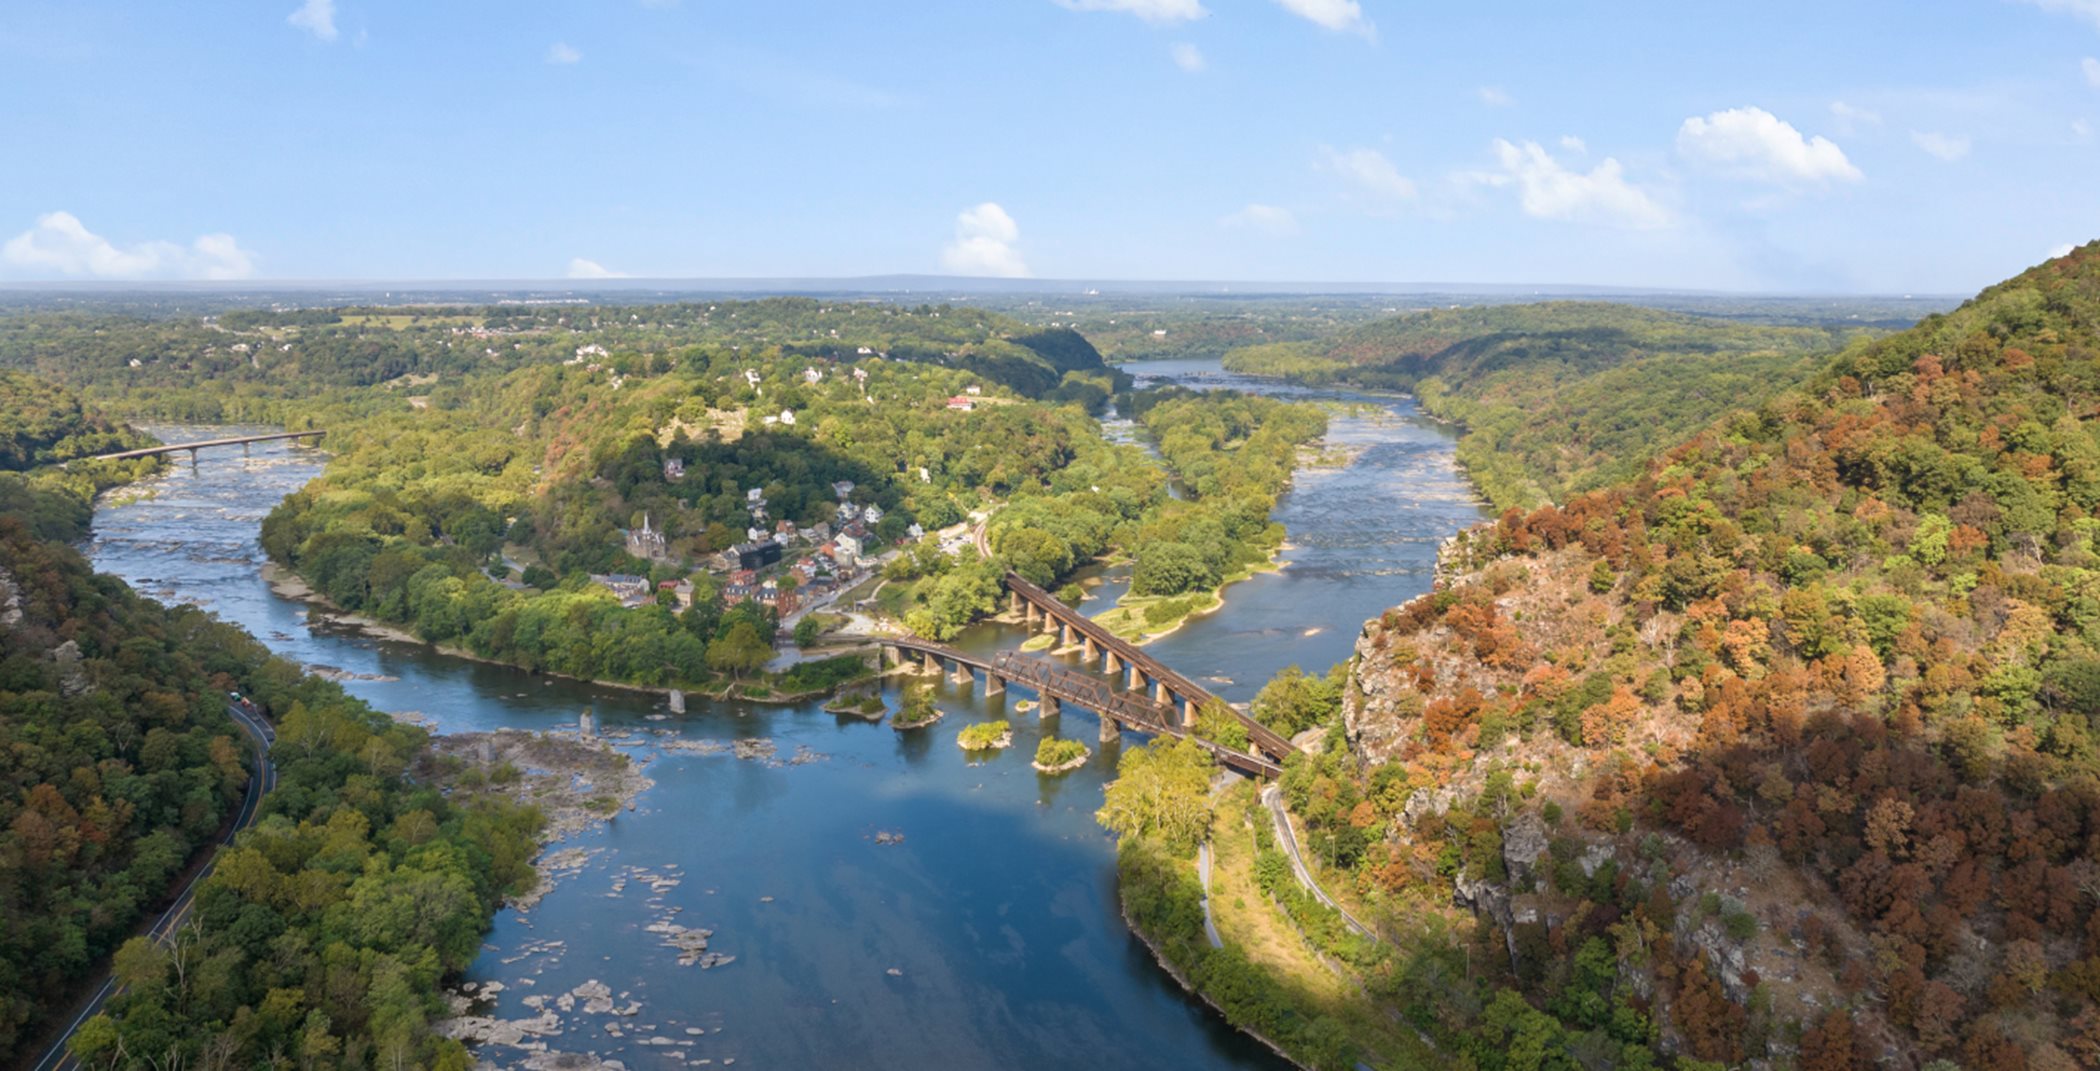 The Shenandoah and Potomac Rivers